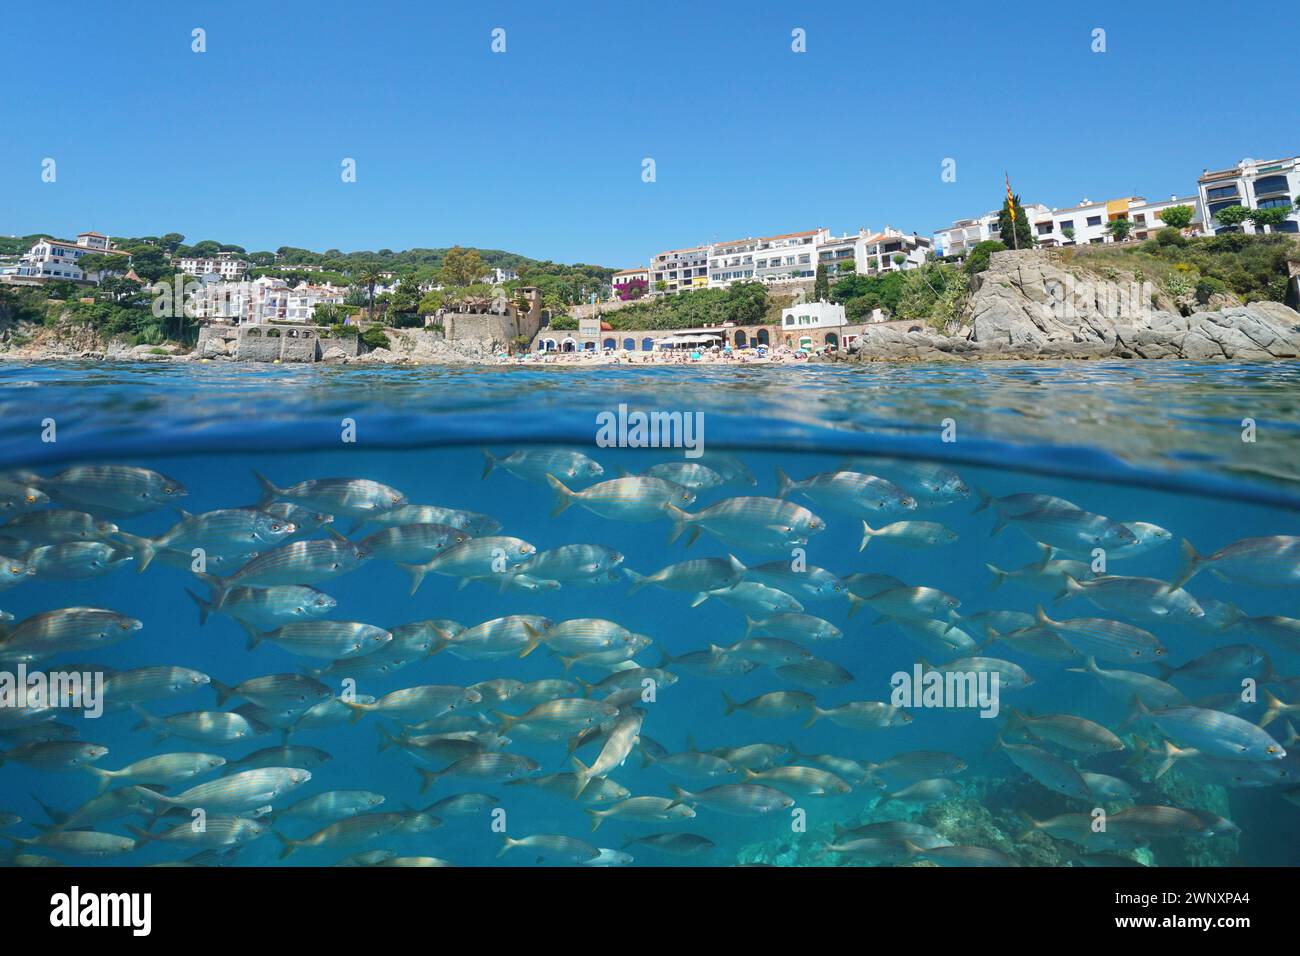 Espagne ville touristique sur la côte méditerranéenne vue de la surface de la mer avec une école de poissons sous l'eau, scène naturelle, vue divisée sur et sous l'eau Banque D'Images